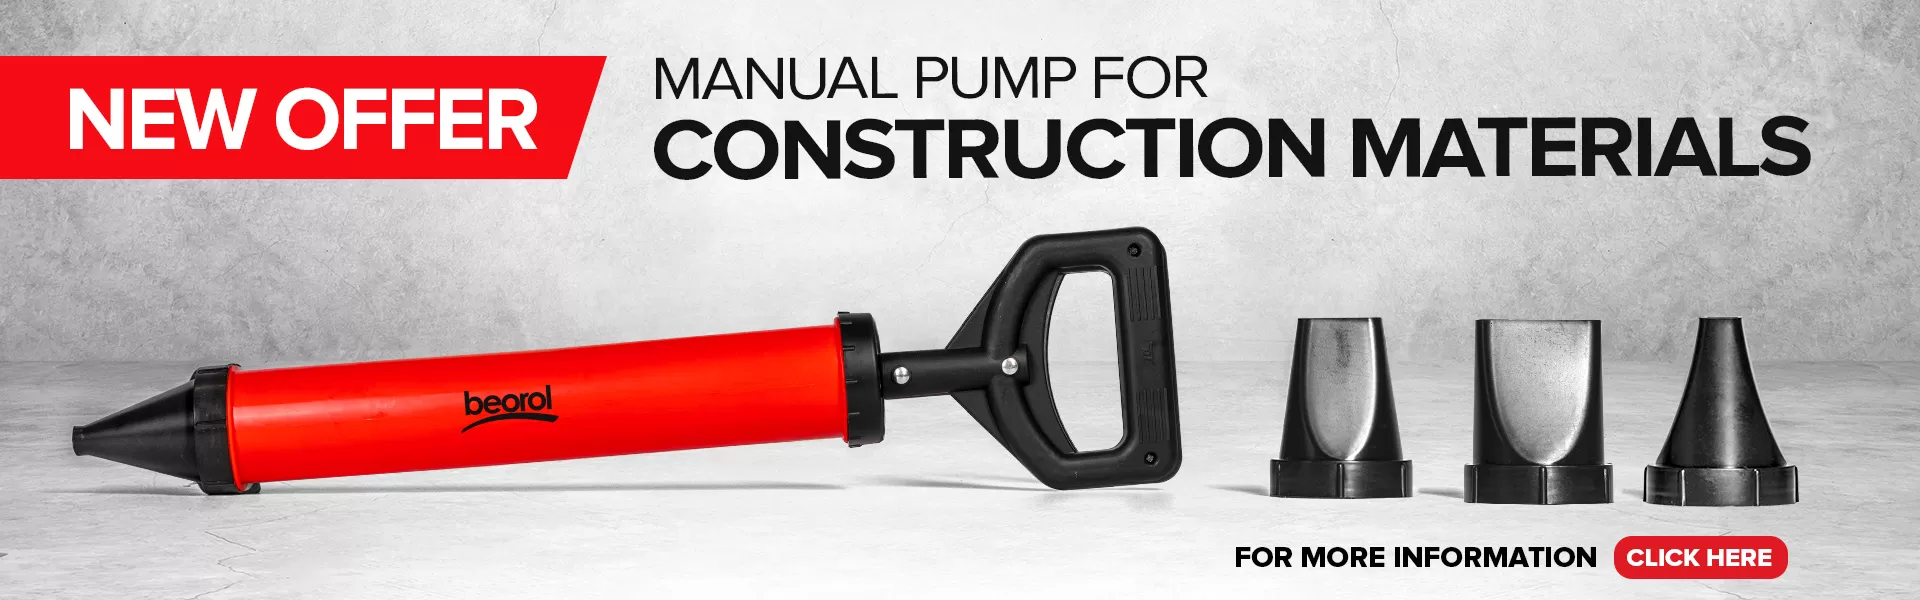 Manual pump for construction materials